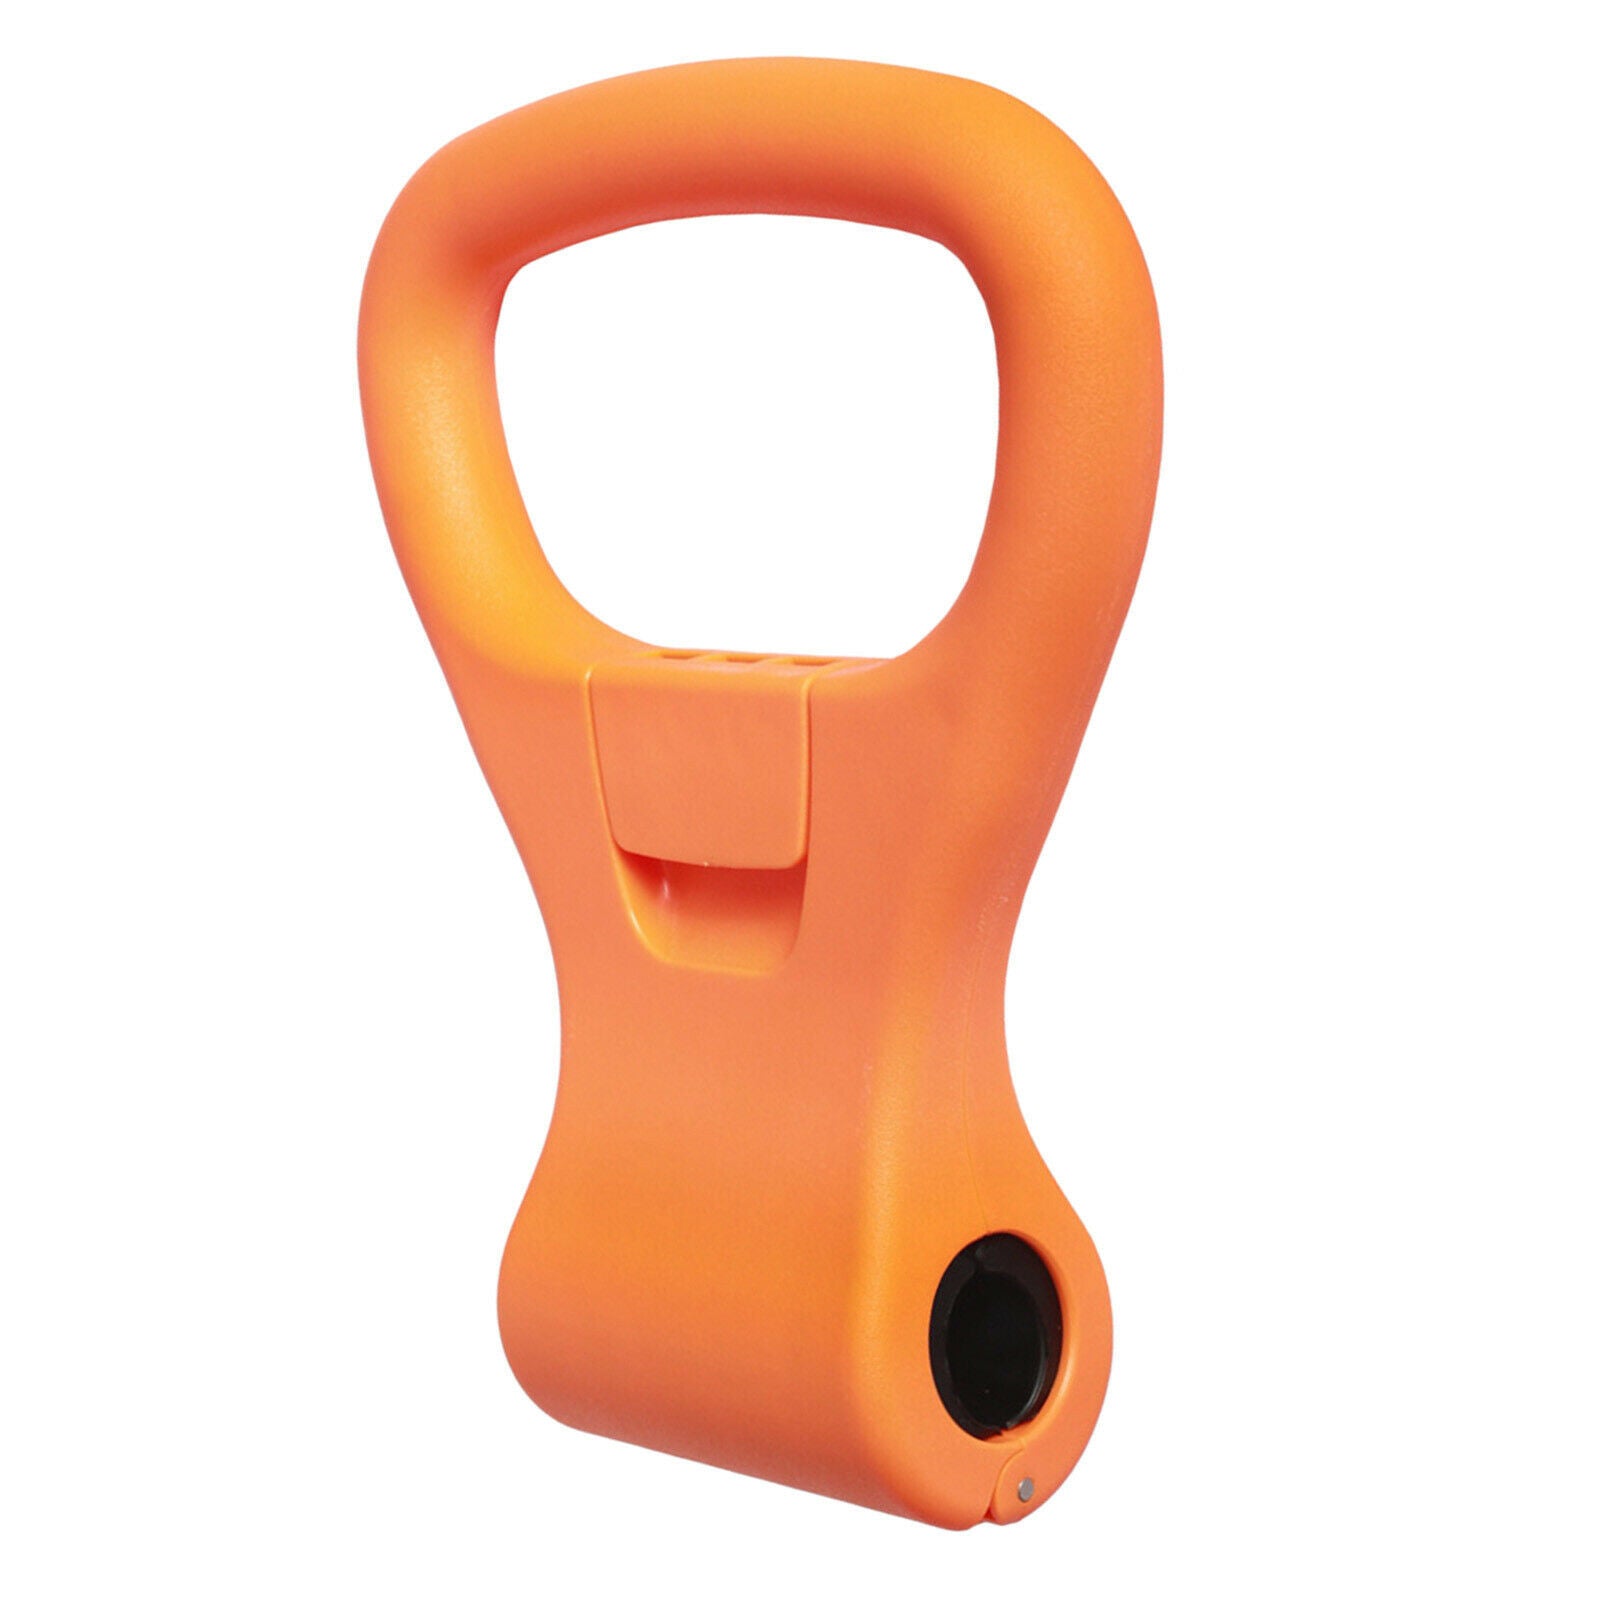 Fitness Kettlebells Grip Dumbbell to Kettlebell Adapter Handle Equipment